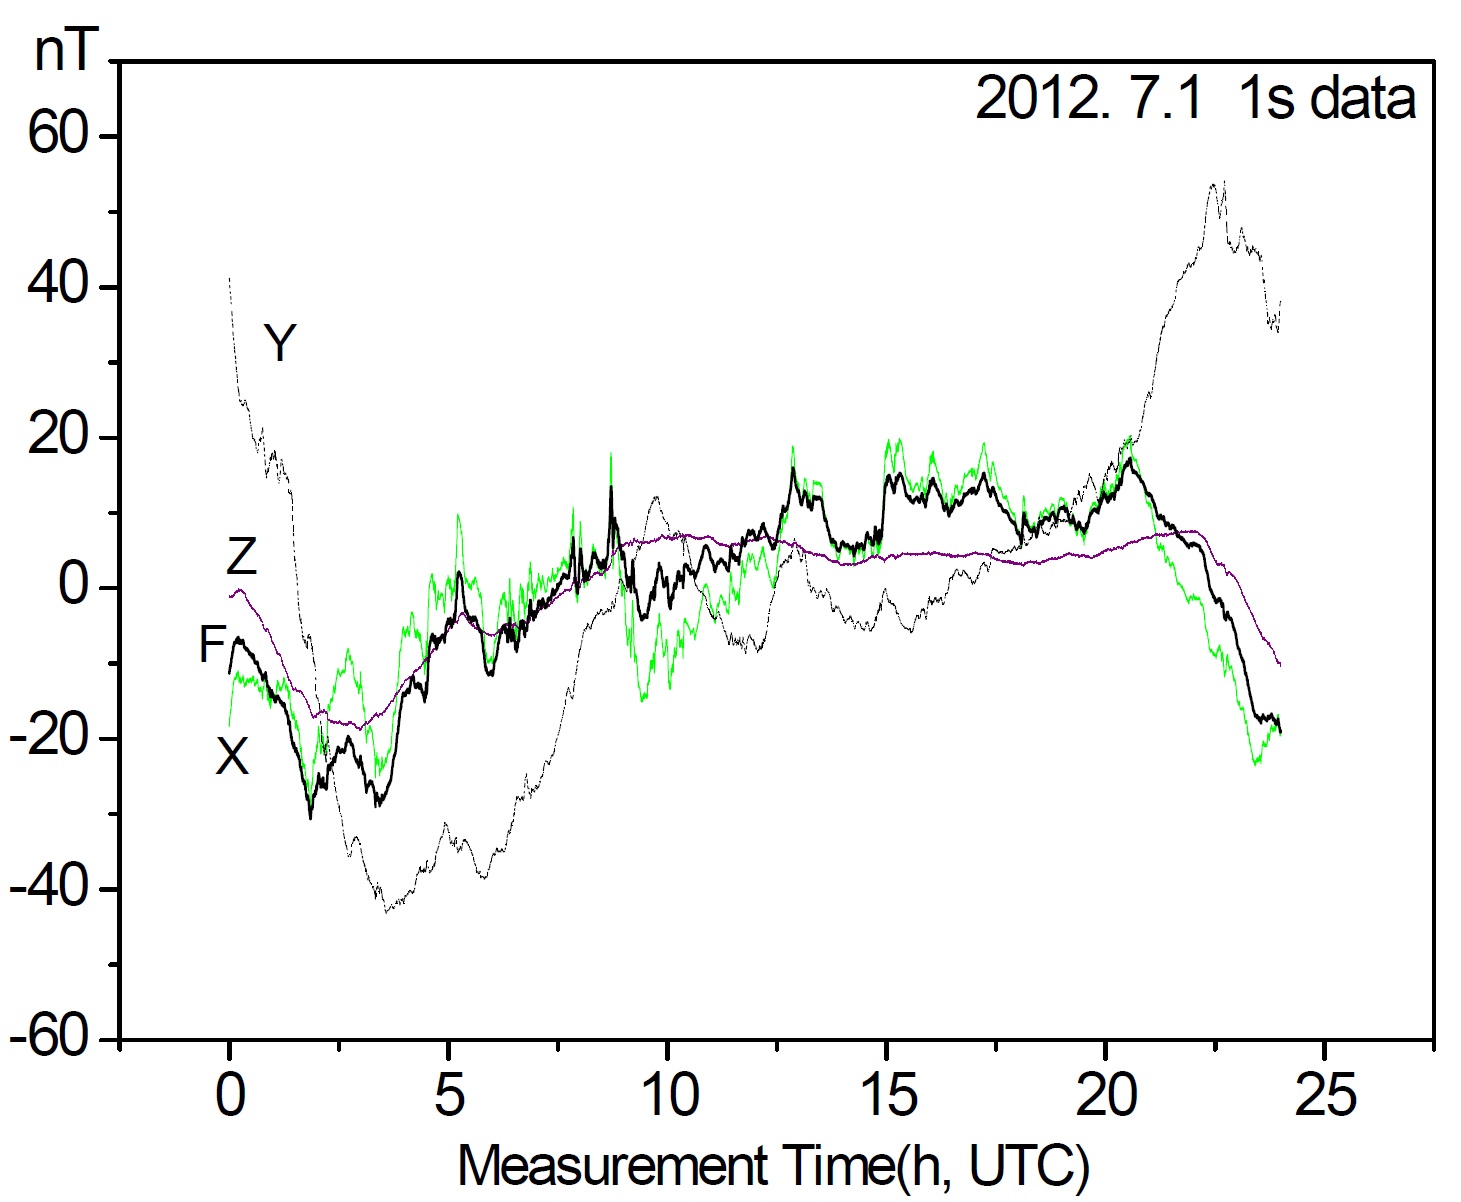 그림. 2-1-3. 지구자기장의 일변화(2012. 7. 1. 청양관측소, 1초, 변화량)